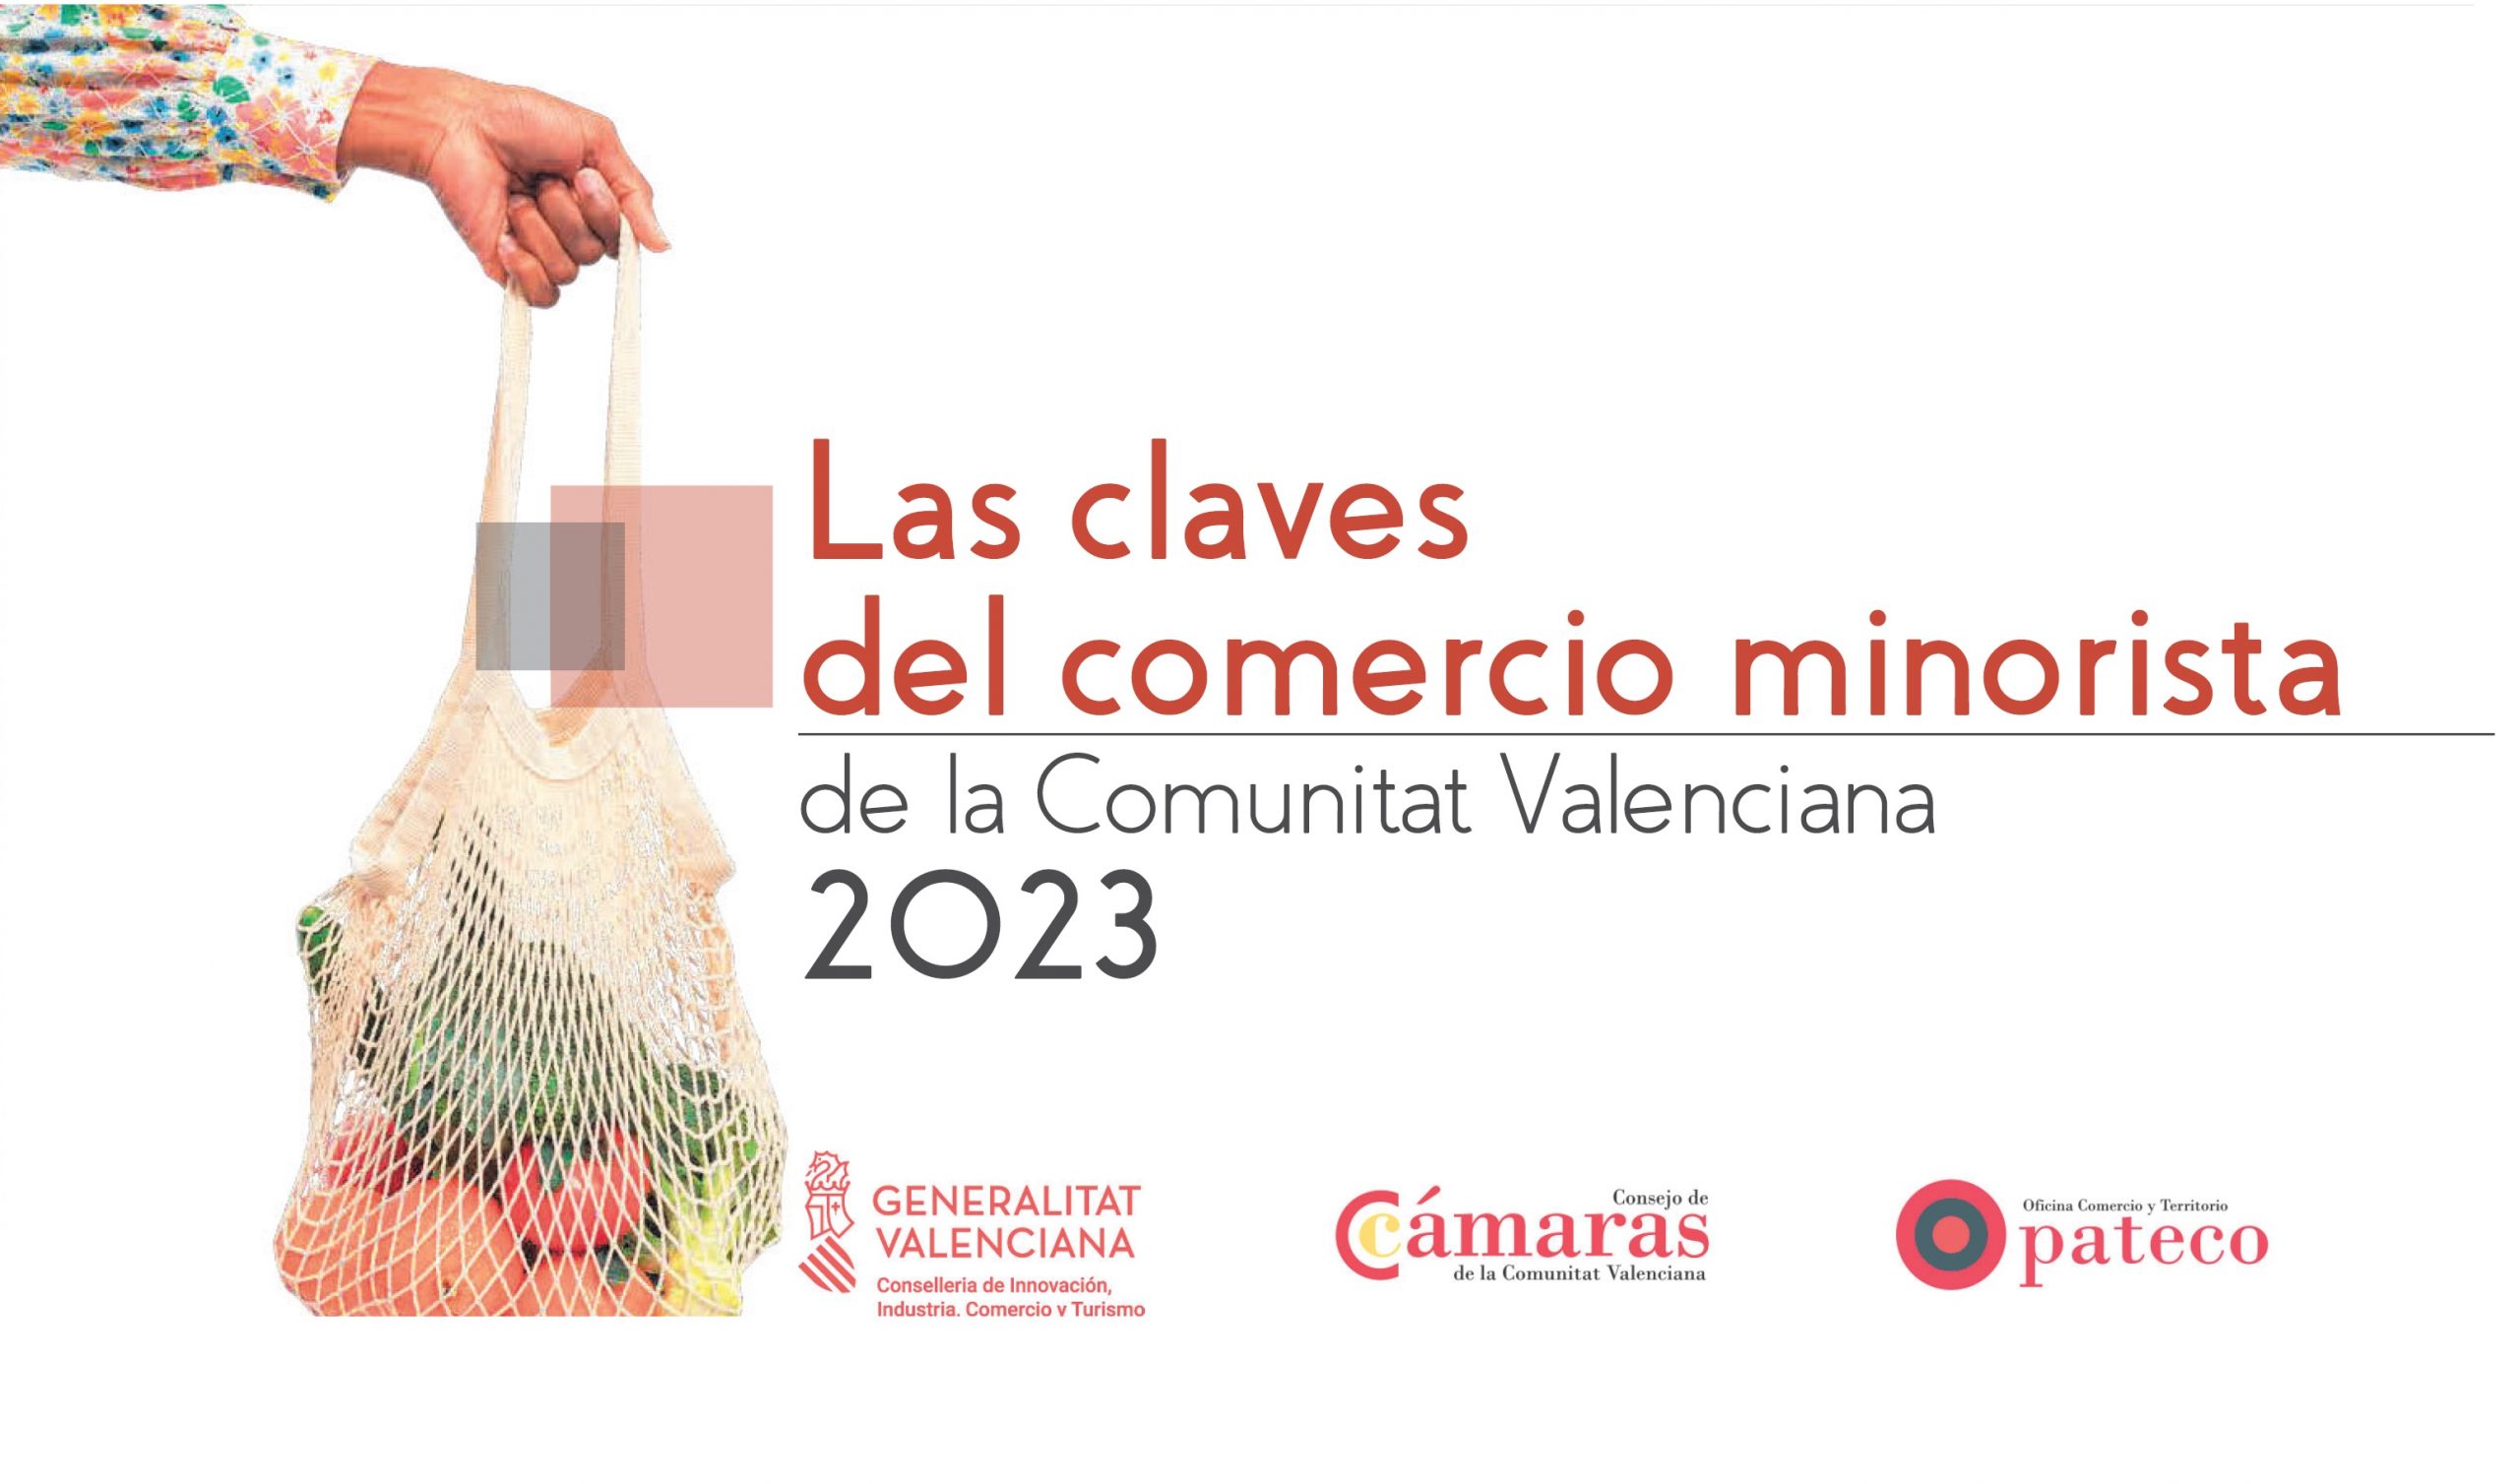 Las claves del comercio minorista de la Comunitat Valenciana 2023